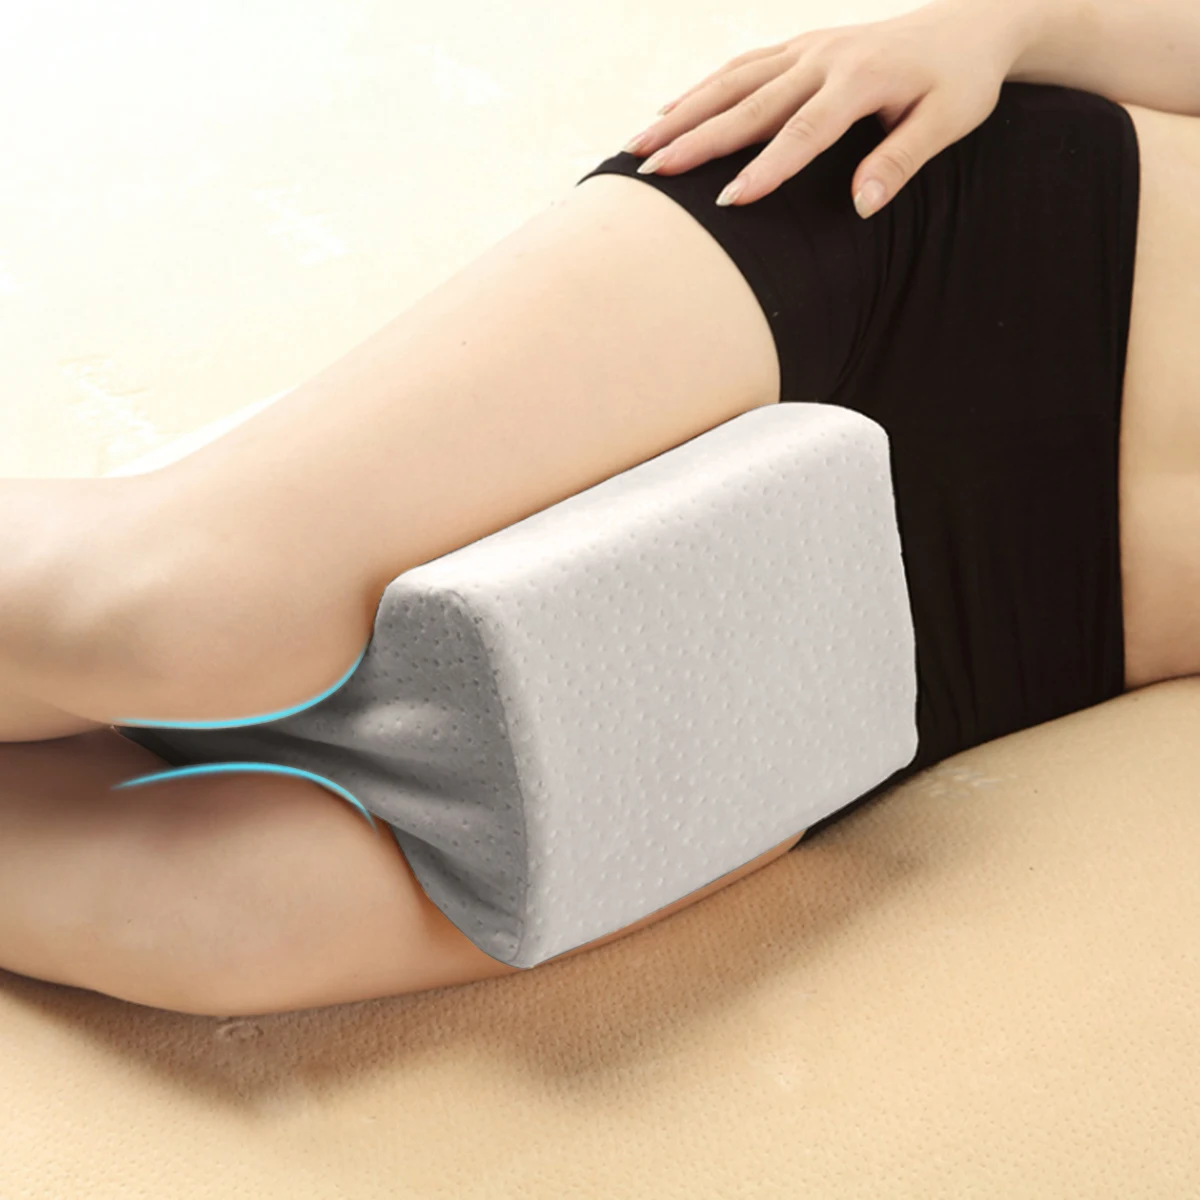 2019 Memory Foam наколенник подушка для кровати Подушка для ног Утягивающие колготки беременность облегчение боли Подушка для сна подушка для